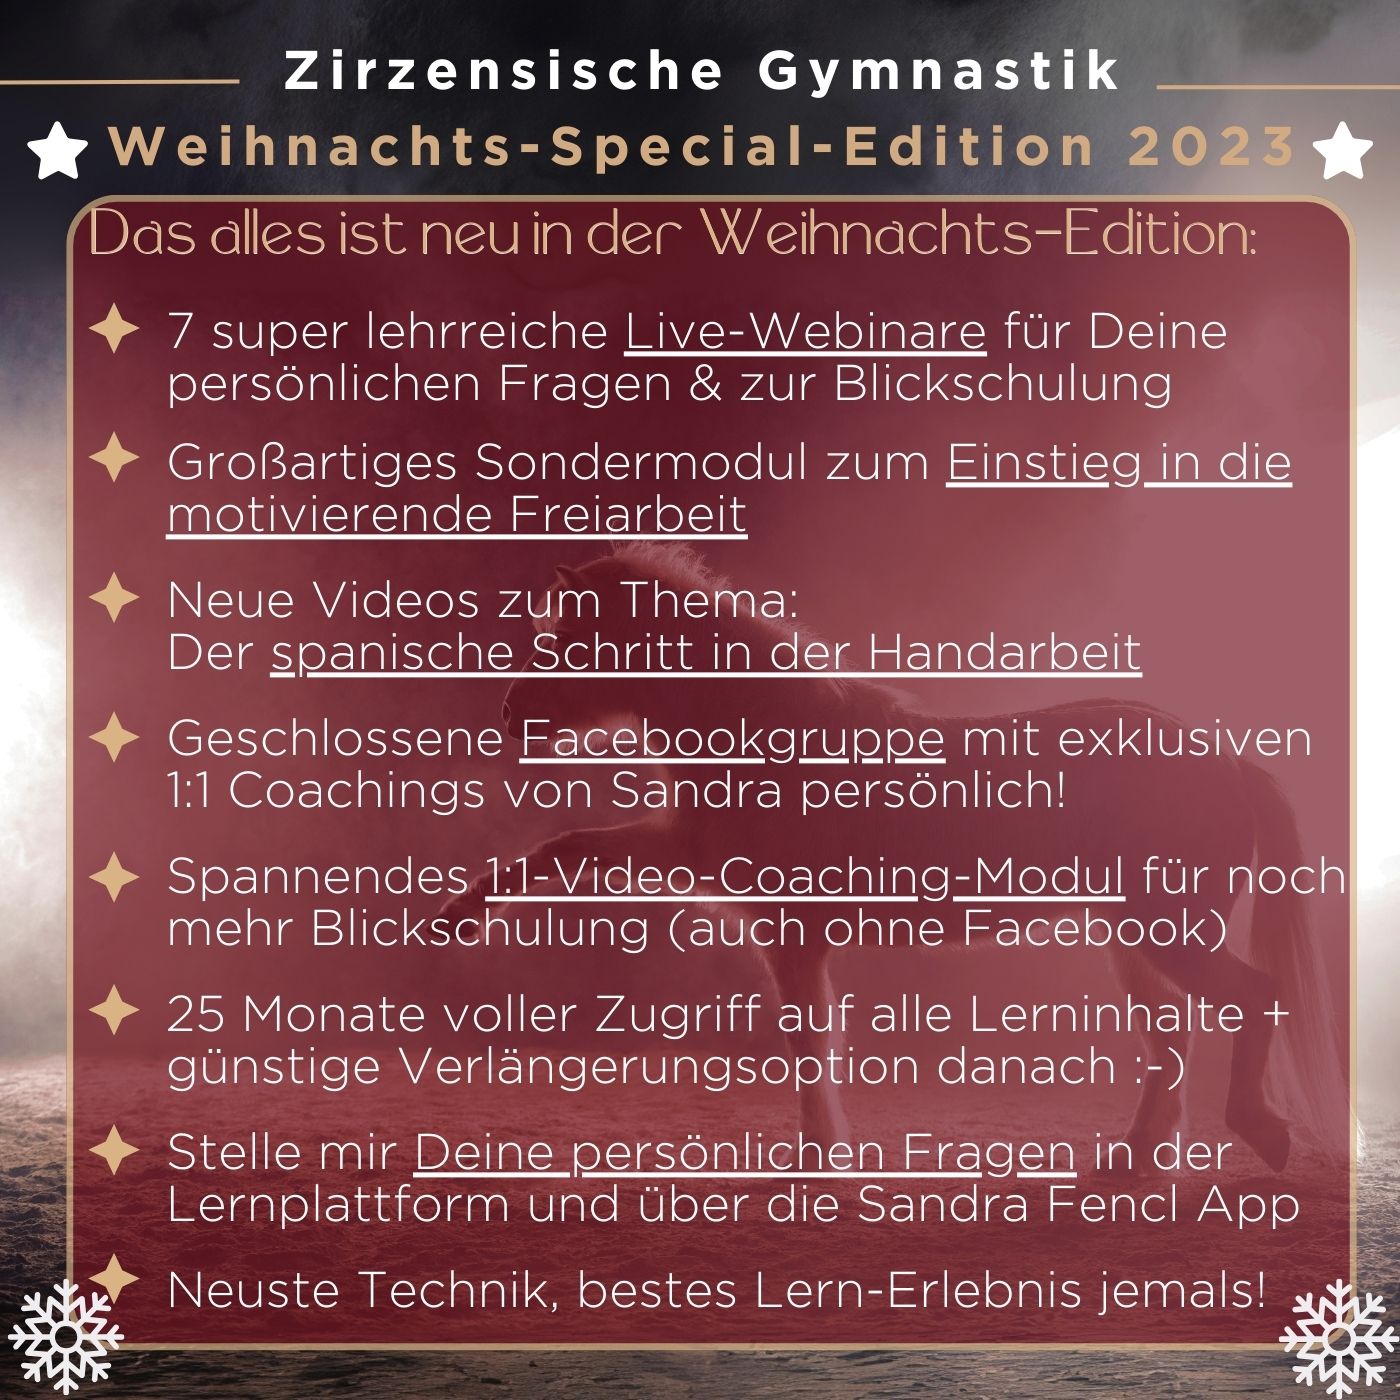 Zirzensische Gymnastik Weihnachtsedition 2023